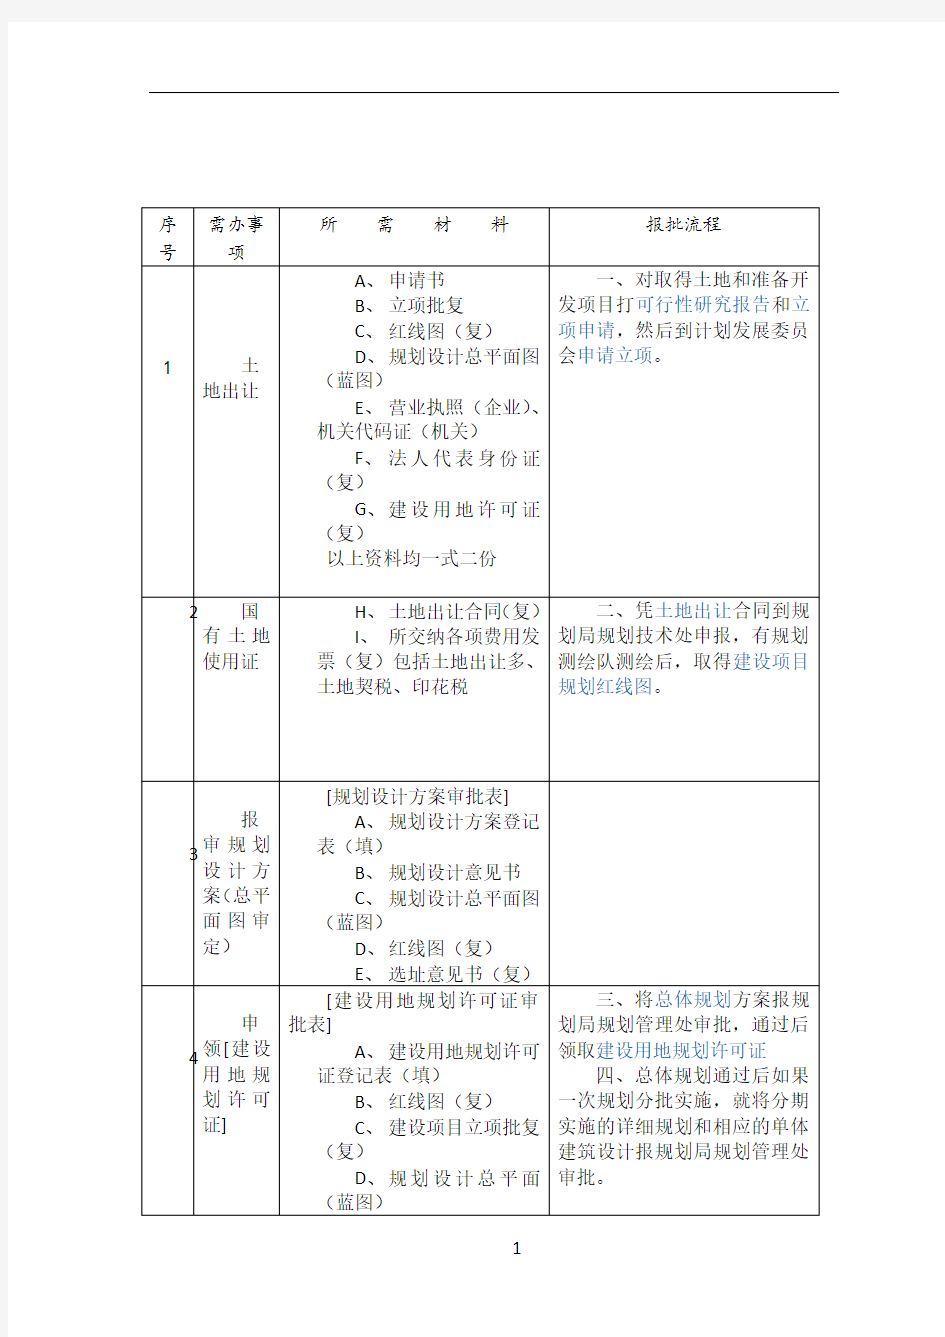 上海建设工程前期报规报建所需材料和流程